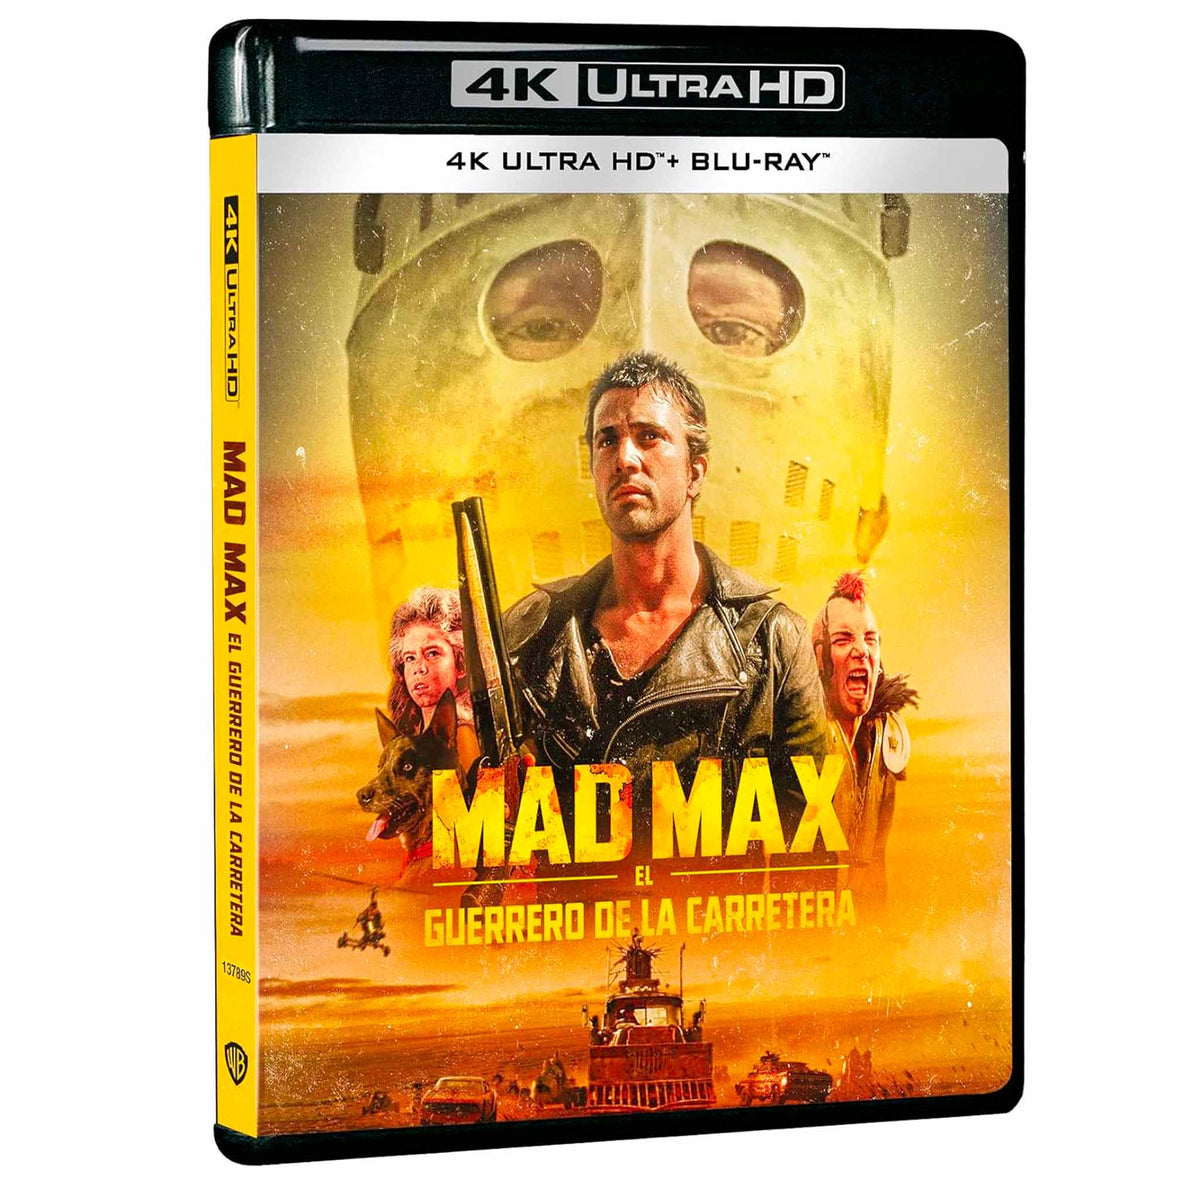 
  
  Mad Max 2: El Guerrero de la Carretera 4K UHD + Blu-Ray
  
